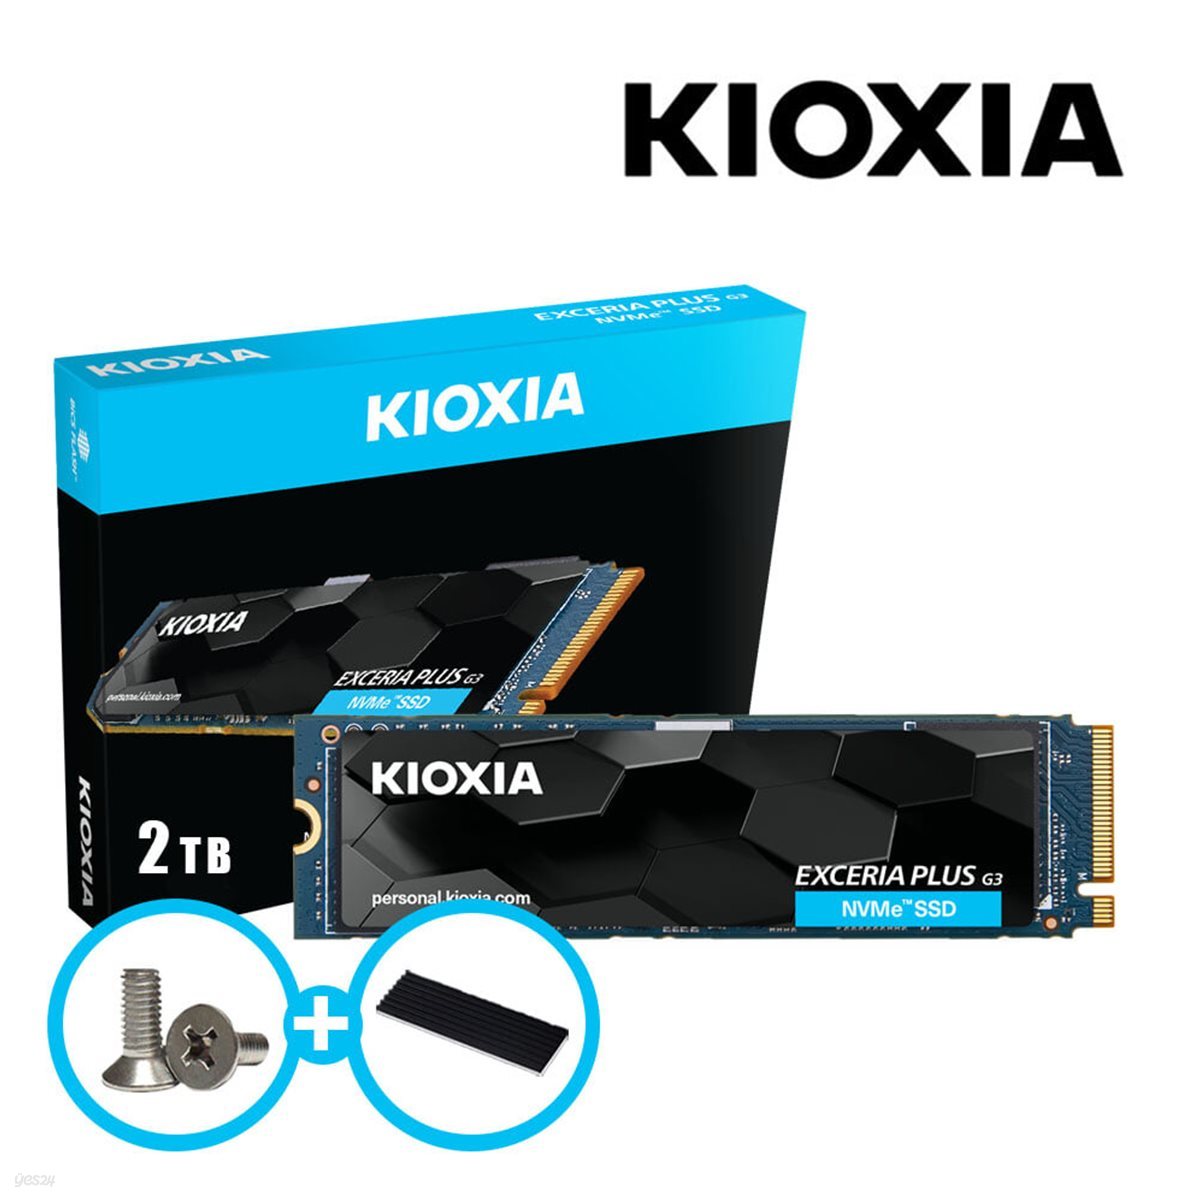 키오시아 EXCERIA PLUS G3 M.2 NVMe SSD 2TB